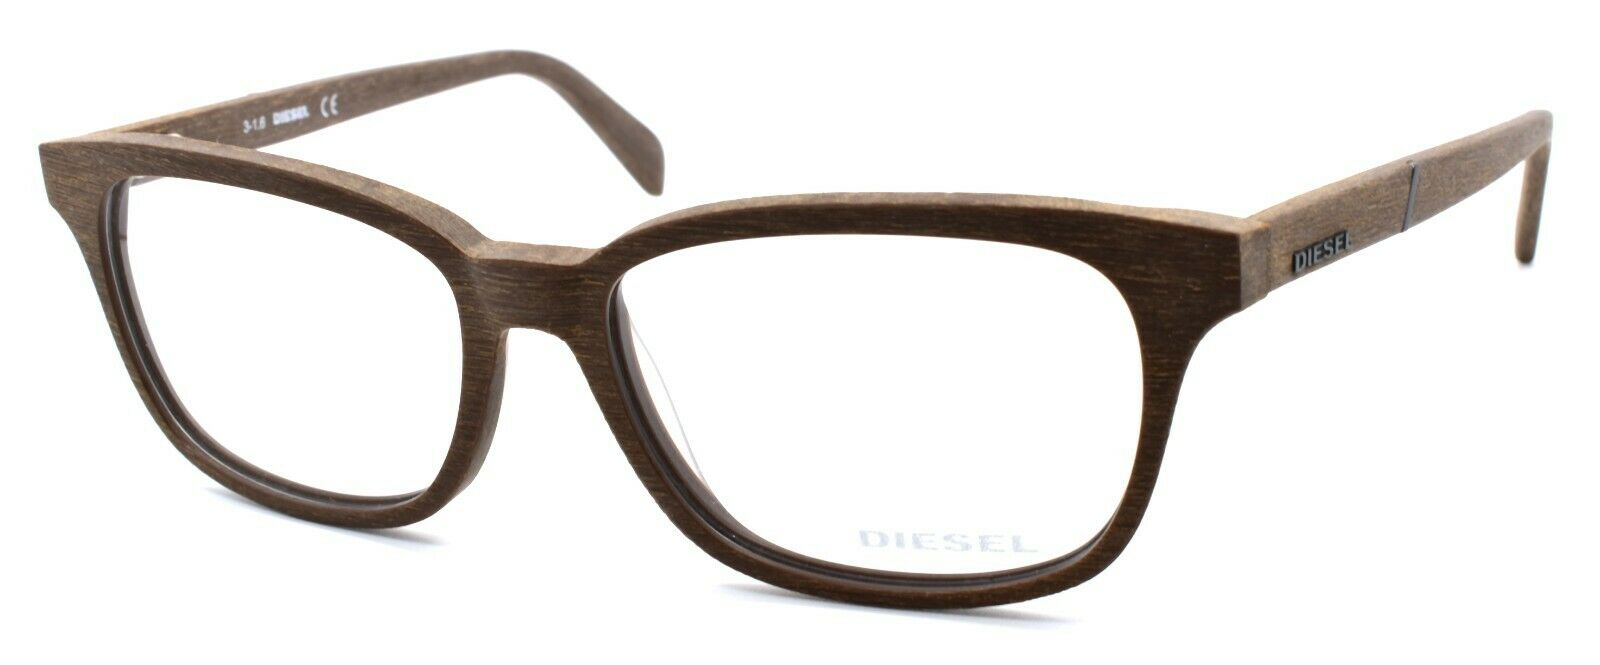 1-Diesel DL5129 050 Unisex Eyeglasses Frames 52-15-145 Brown Wood Grain Texture-664689669332-IKSpecs